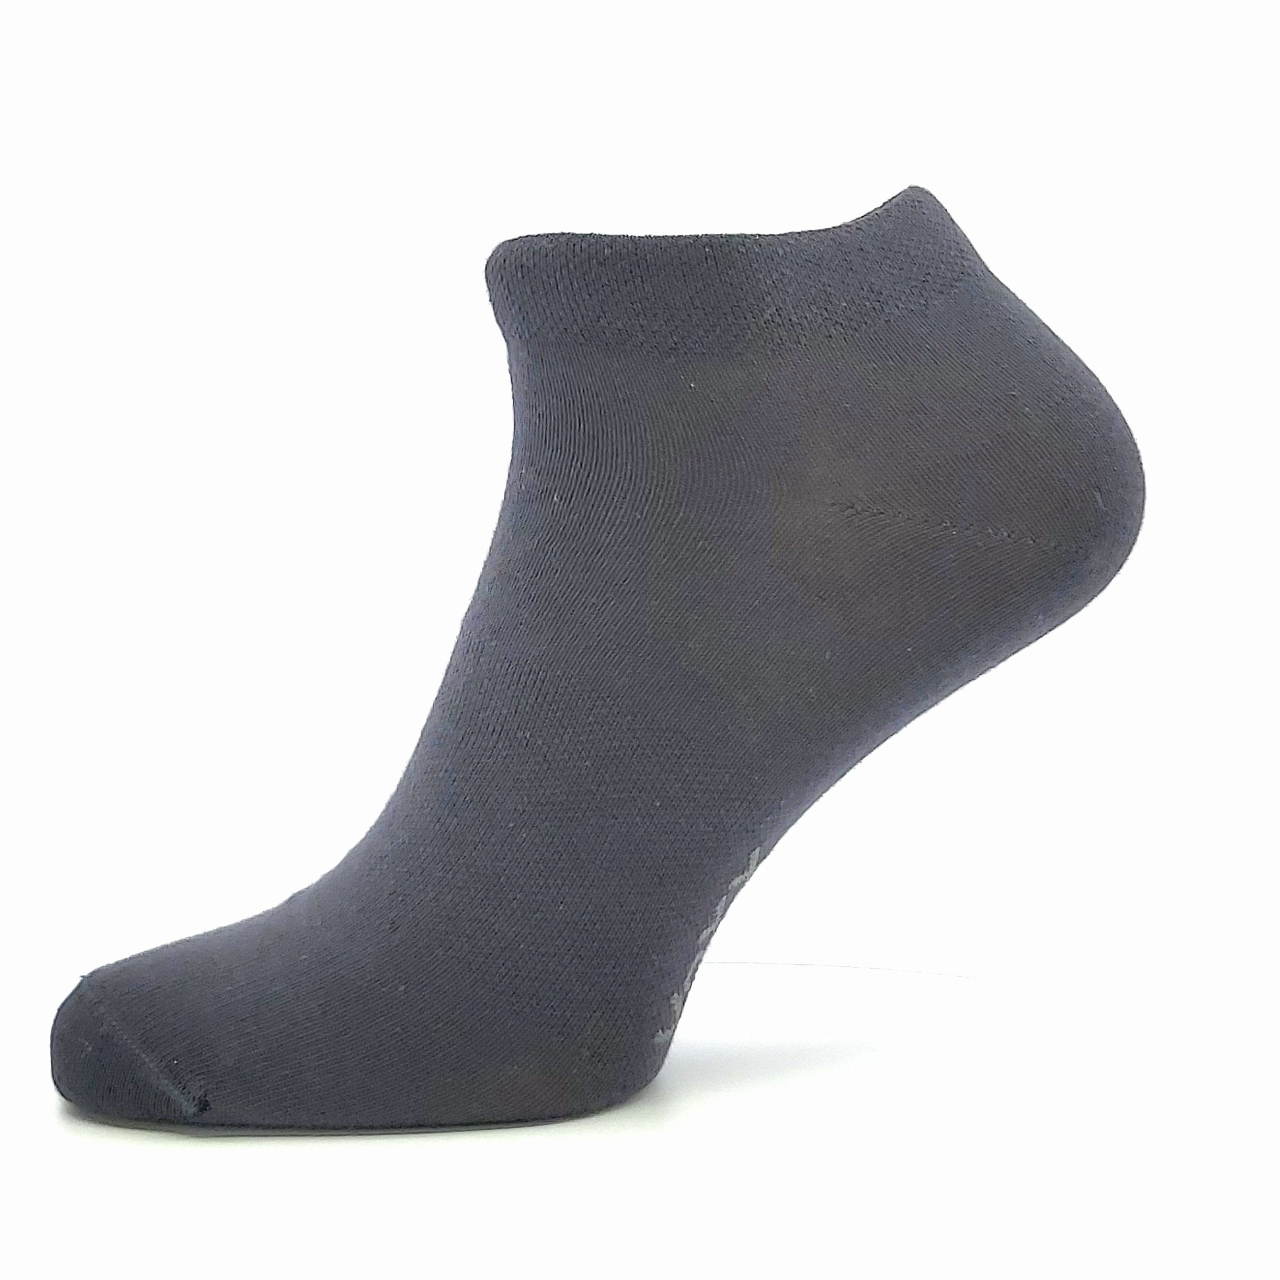 Ponožky unisex Voxx Rex 00 - tmavě šedé, 39-42